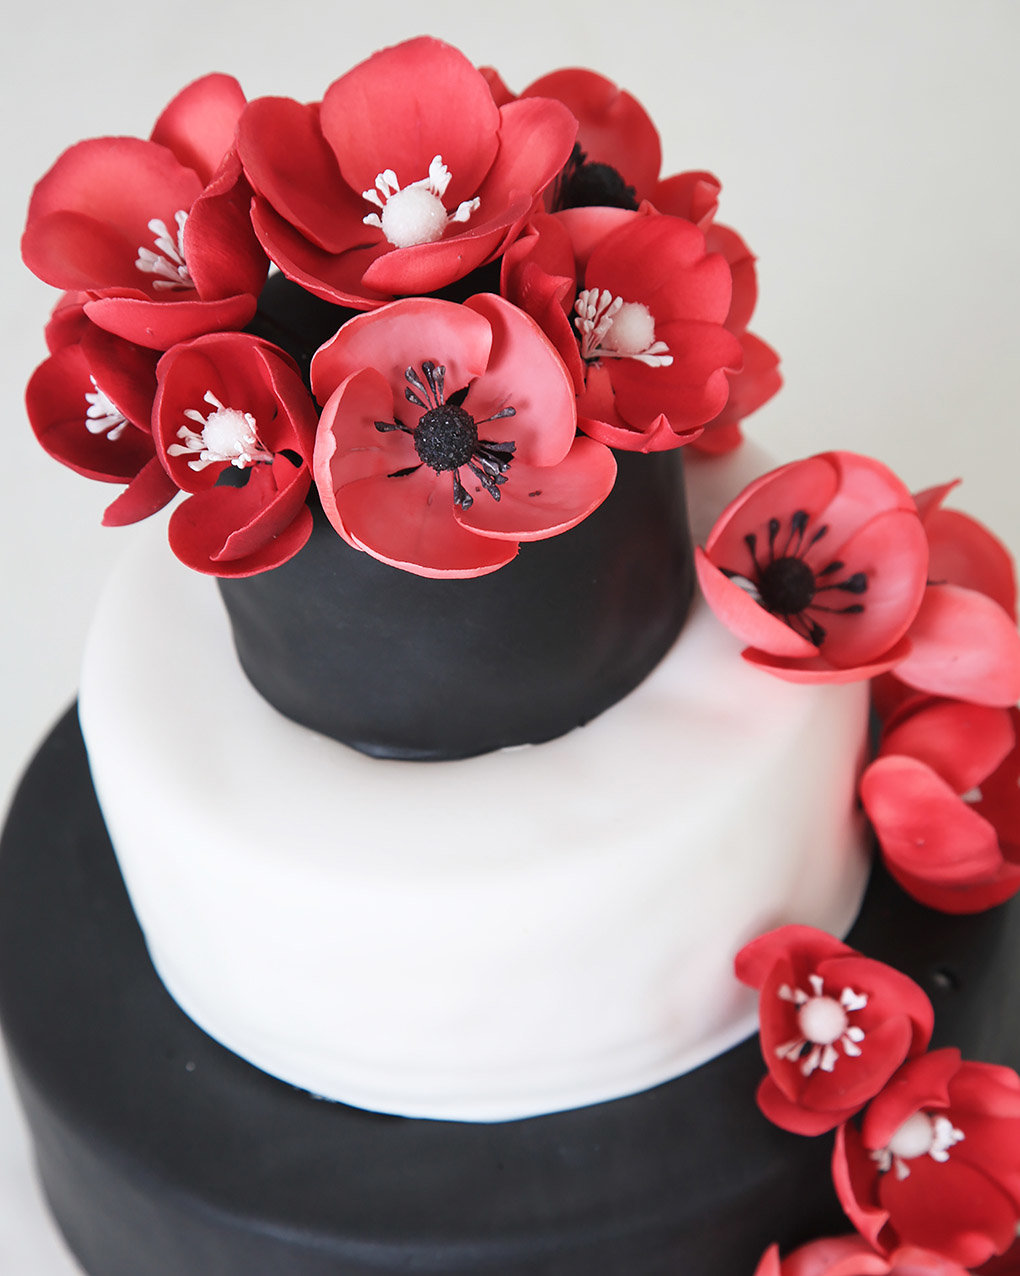 Bruidstaart met rode bloemen van Banketbakkerij van den Berg